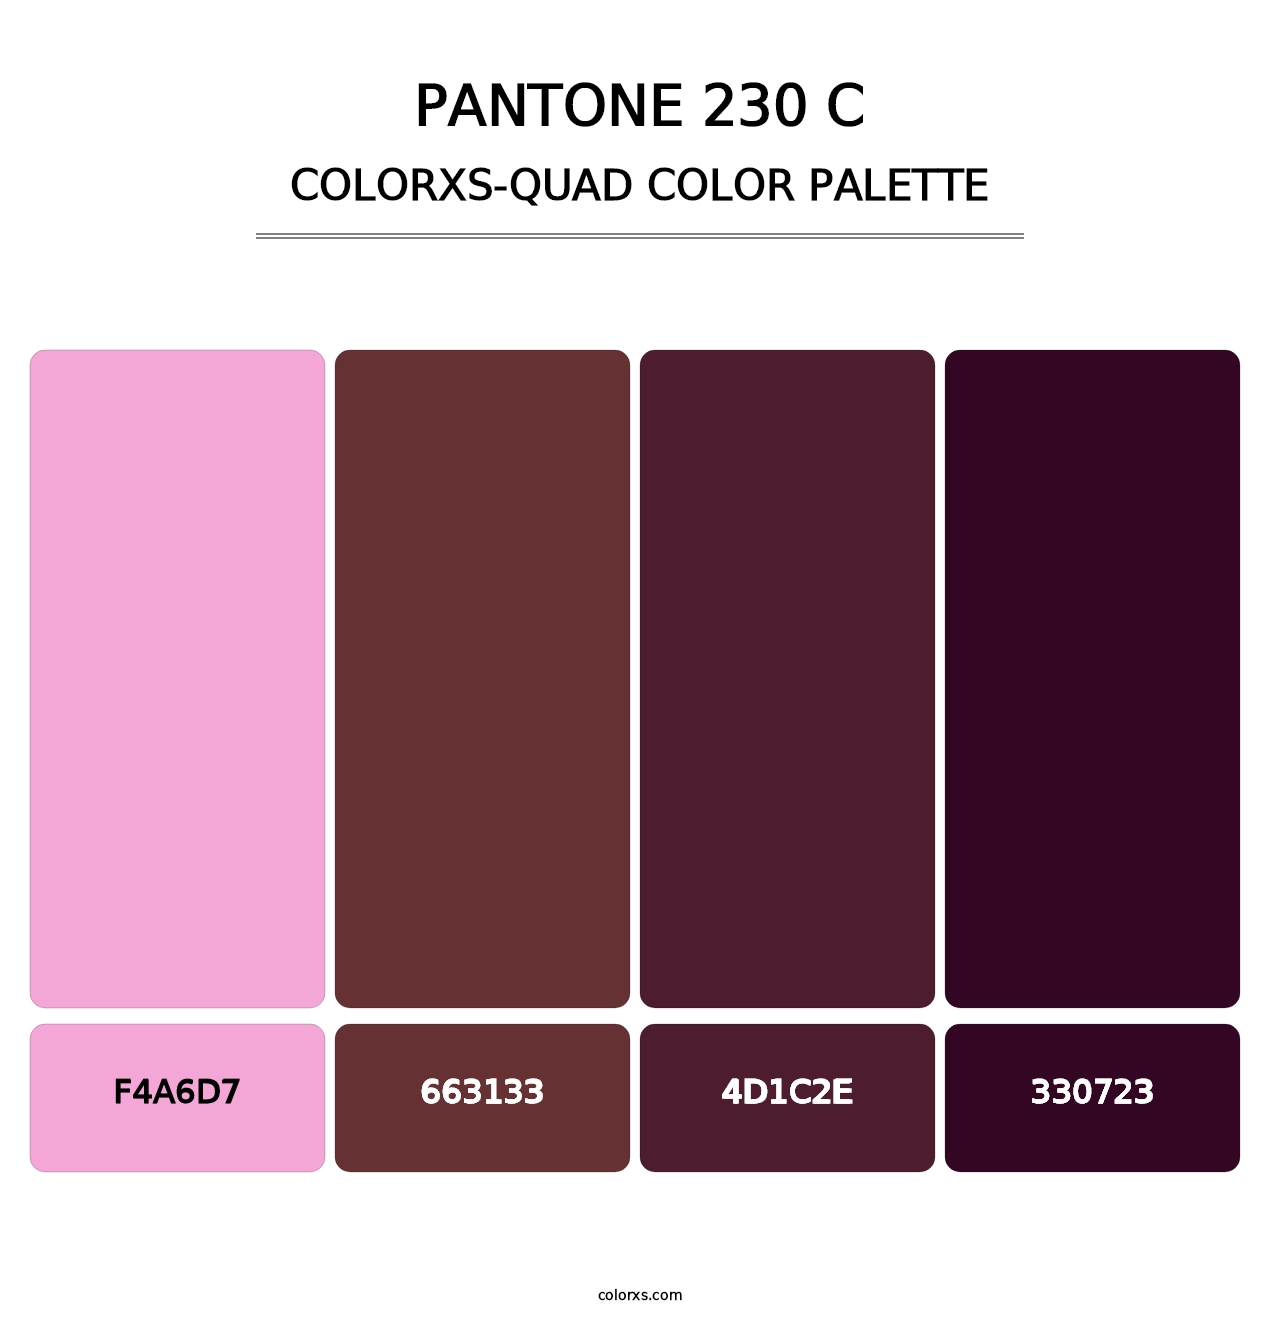 PANTONE 230 C - Colorxs Quad Palette